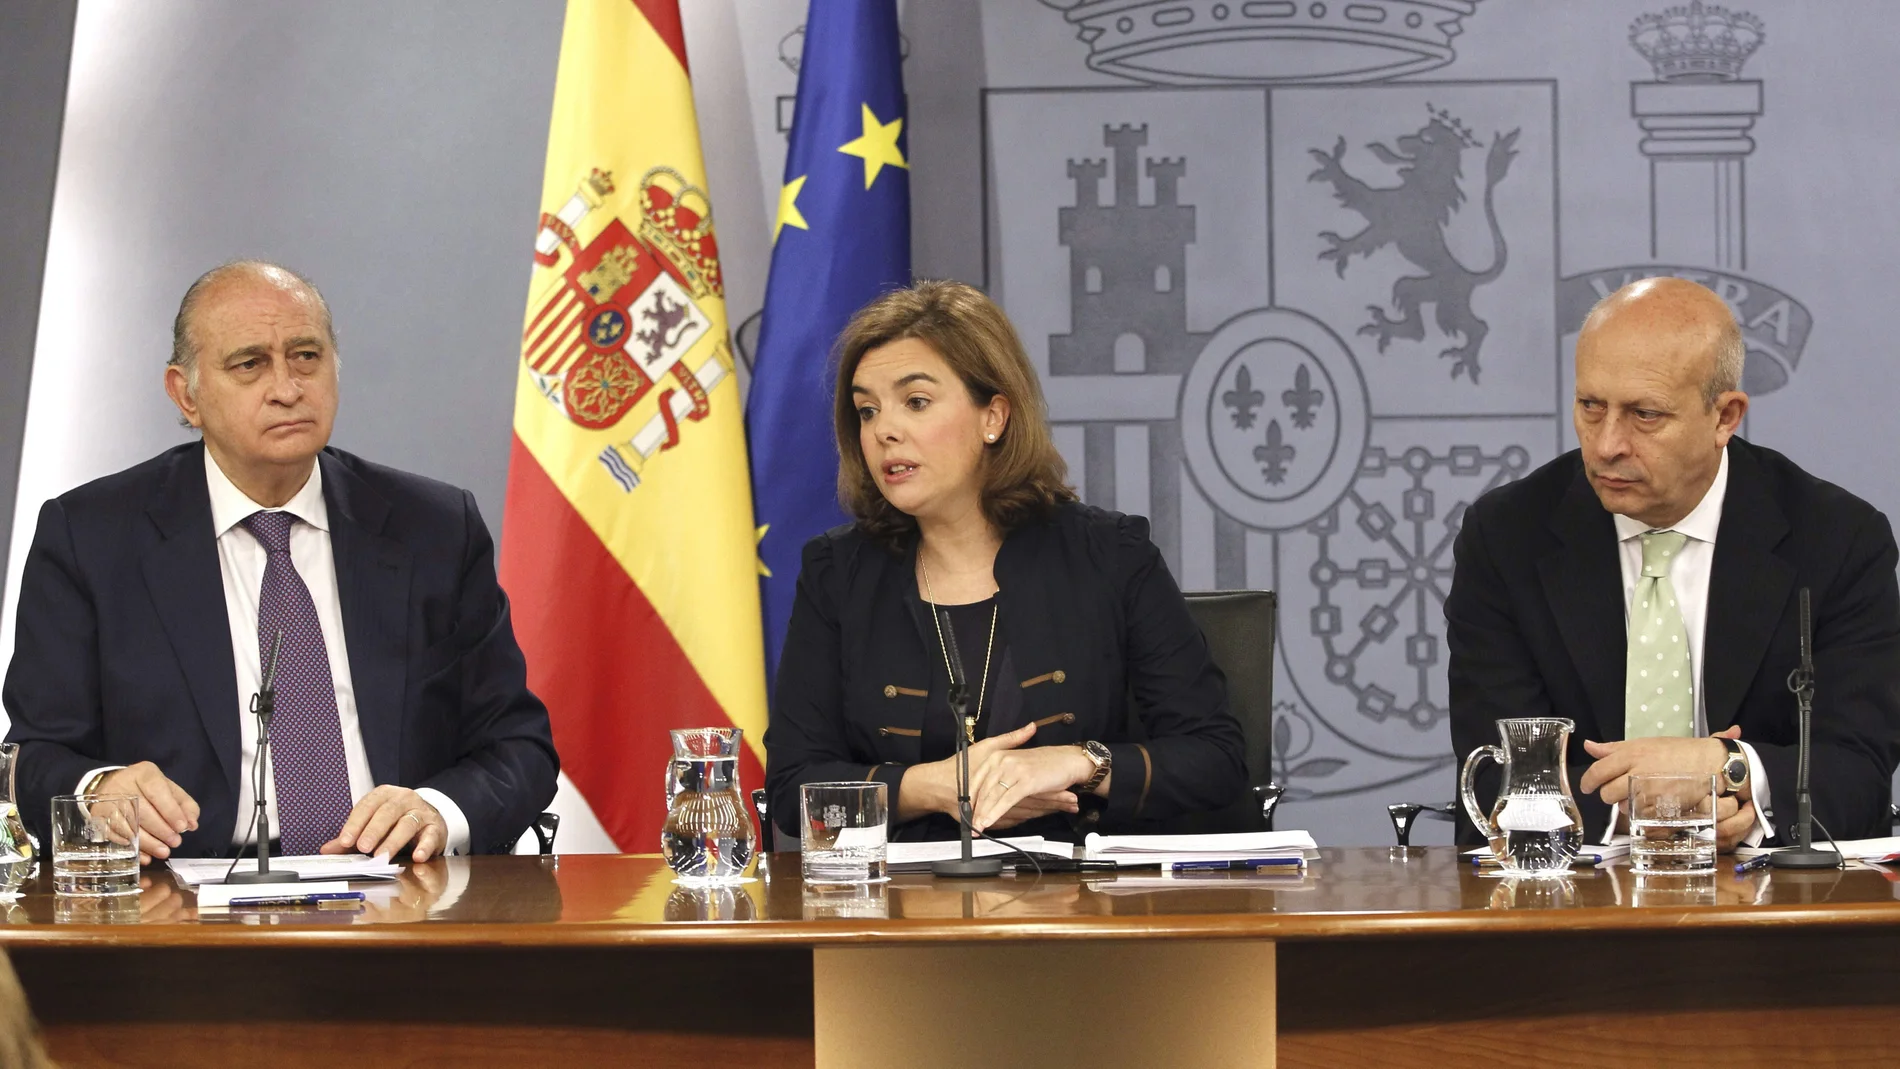 Jorge Fernández Díaz, Soraya Sáenz de Santamaría y José Ignacio Wert, después del Consejo de Ministros